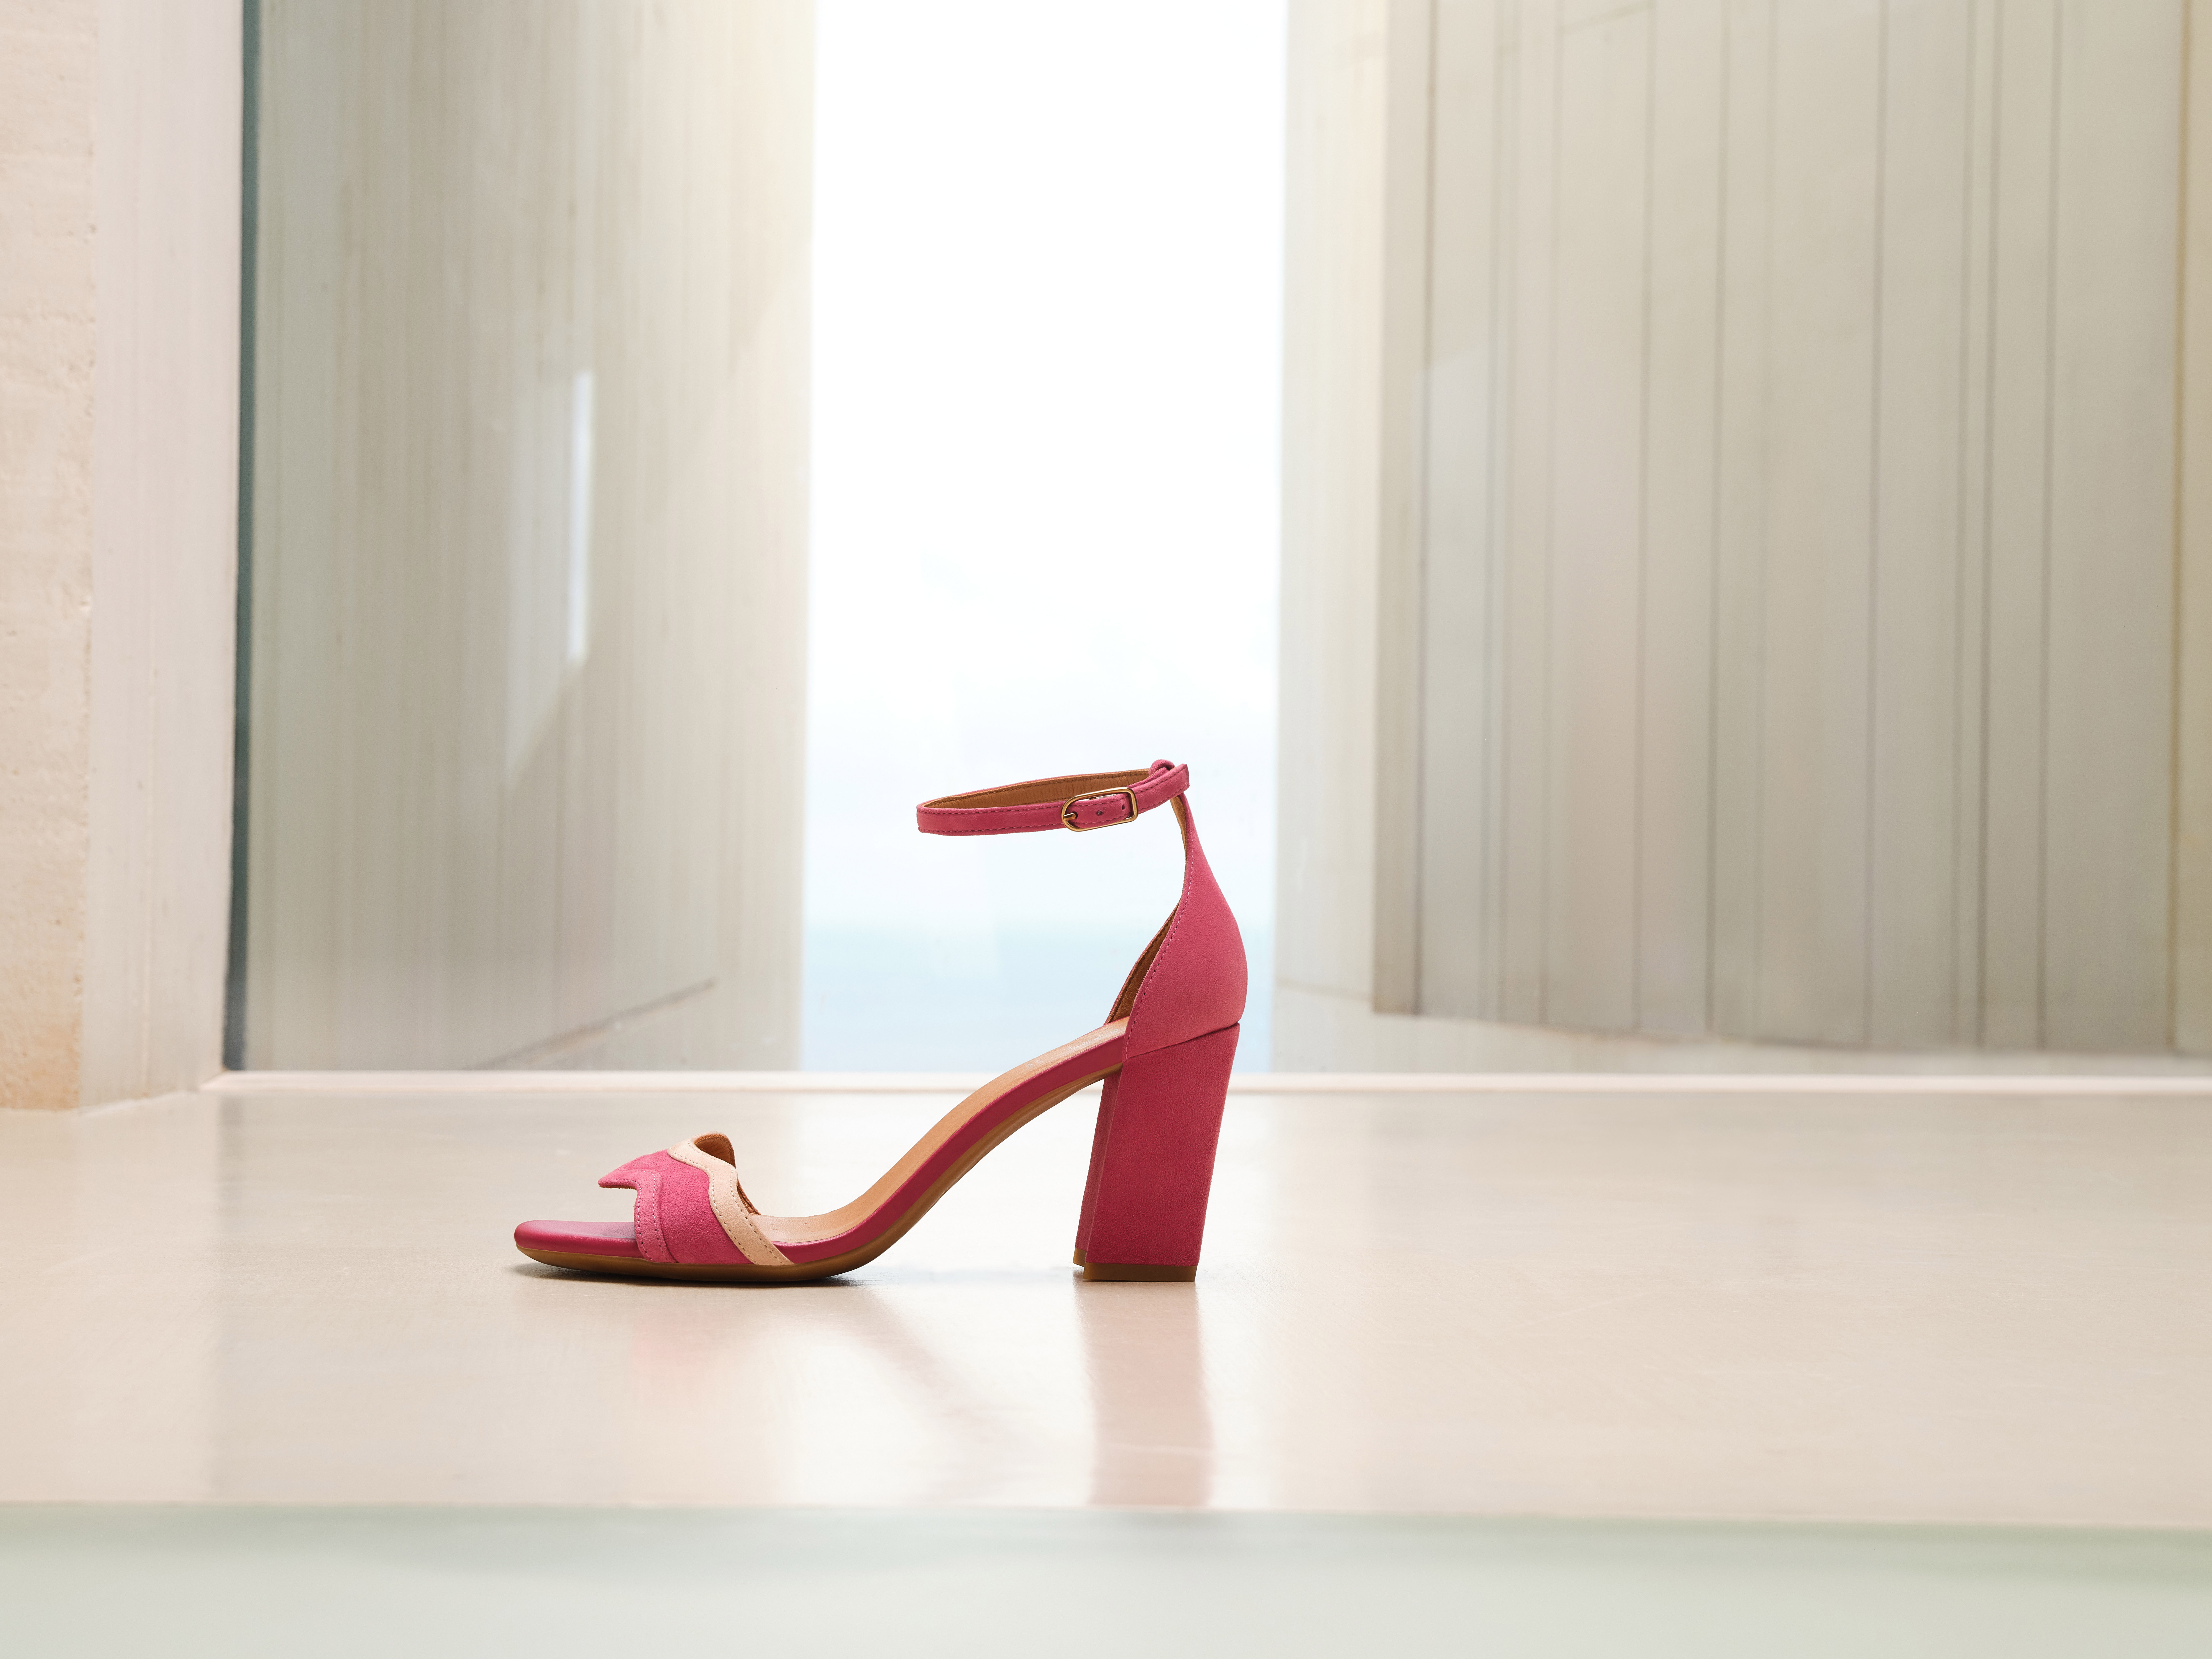 Geox presenta su nueva colección de calzado mujer